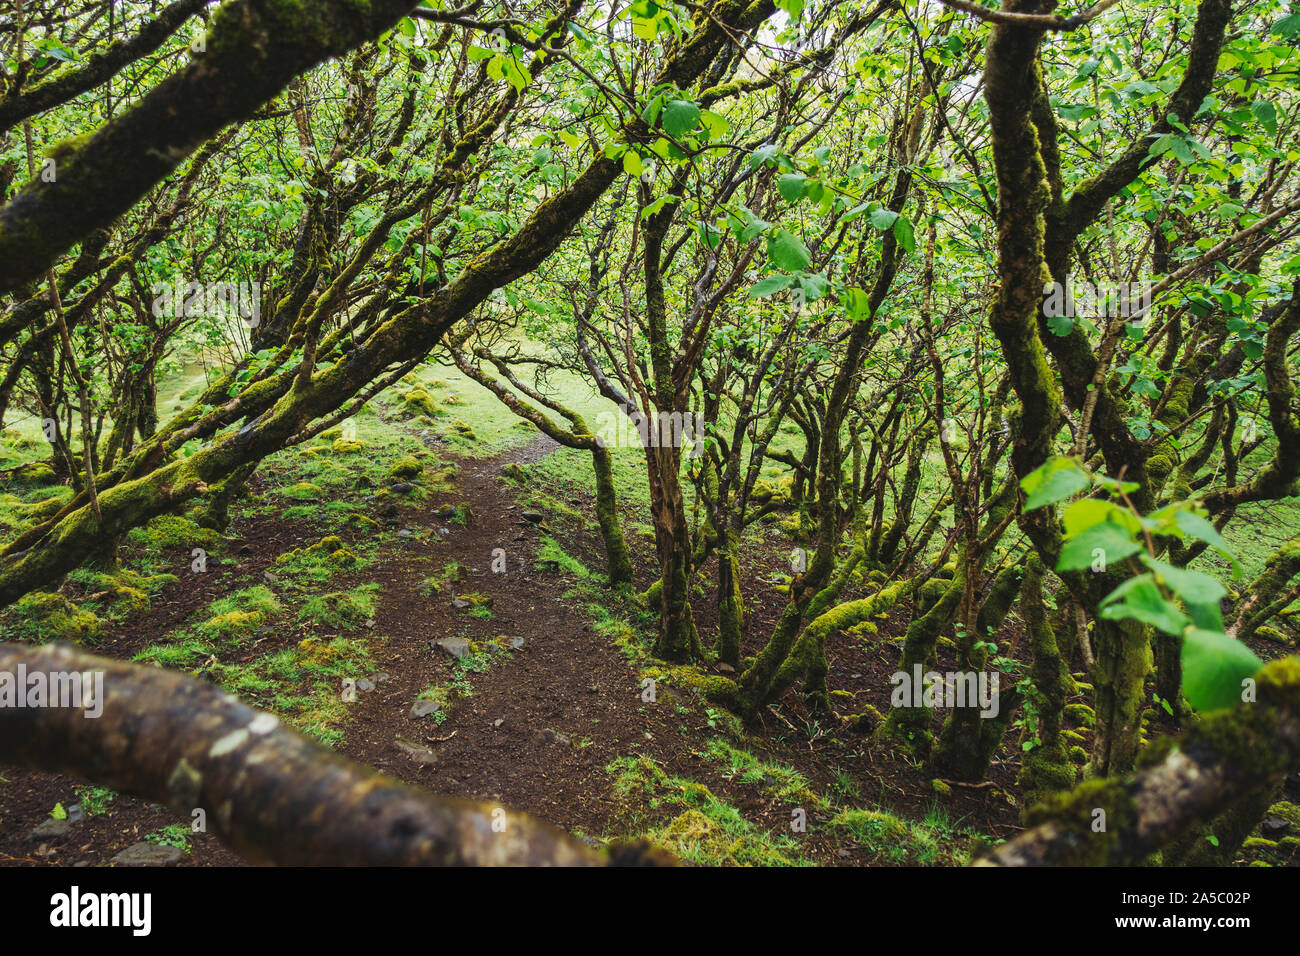 Moss-coperto i rami degli alberi formano una piccola foresta protetta nella pittoresca Fairy Glen, Isola di Skye in Scozia Foto Stock